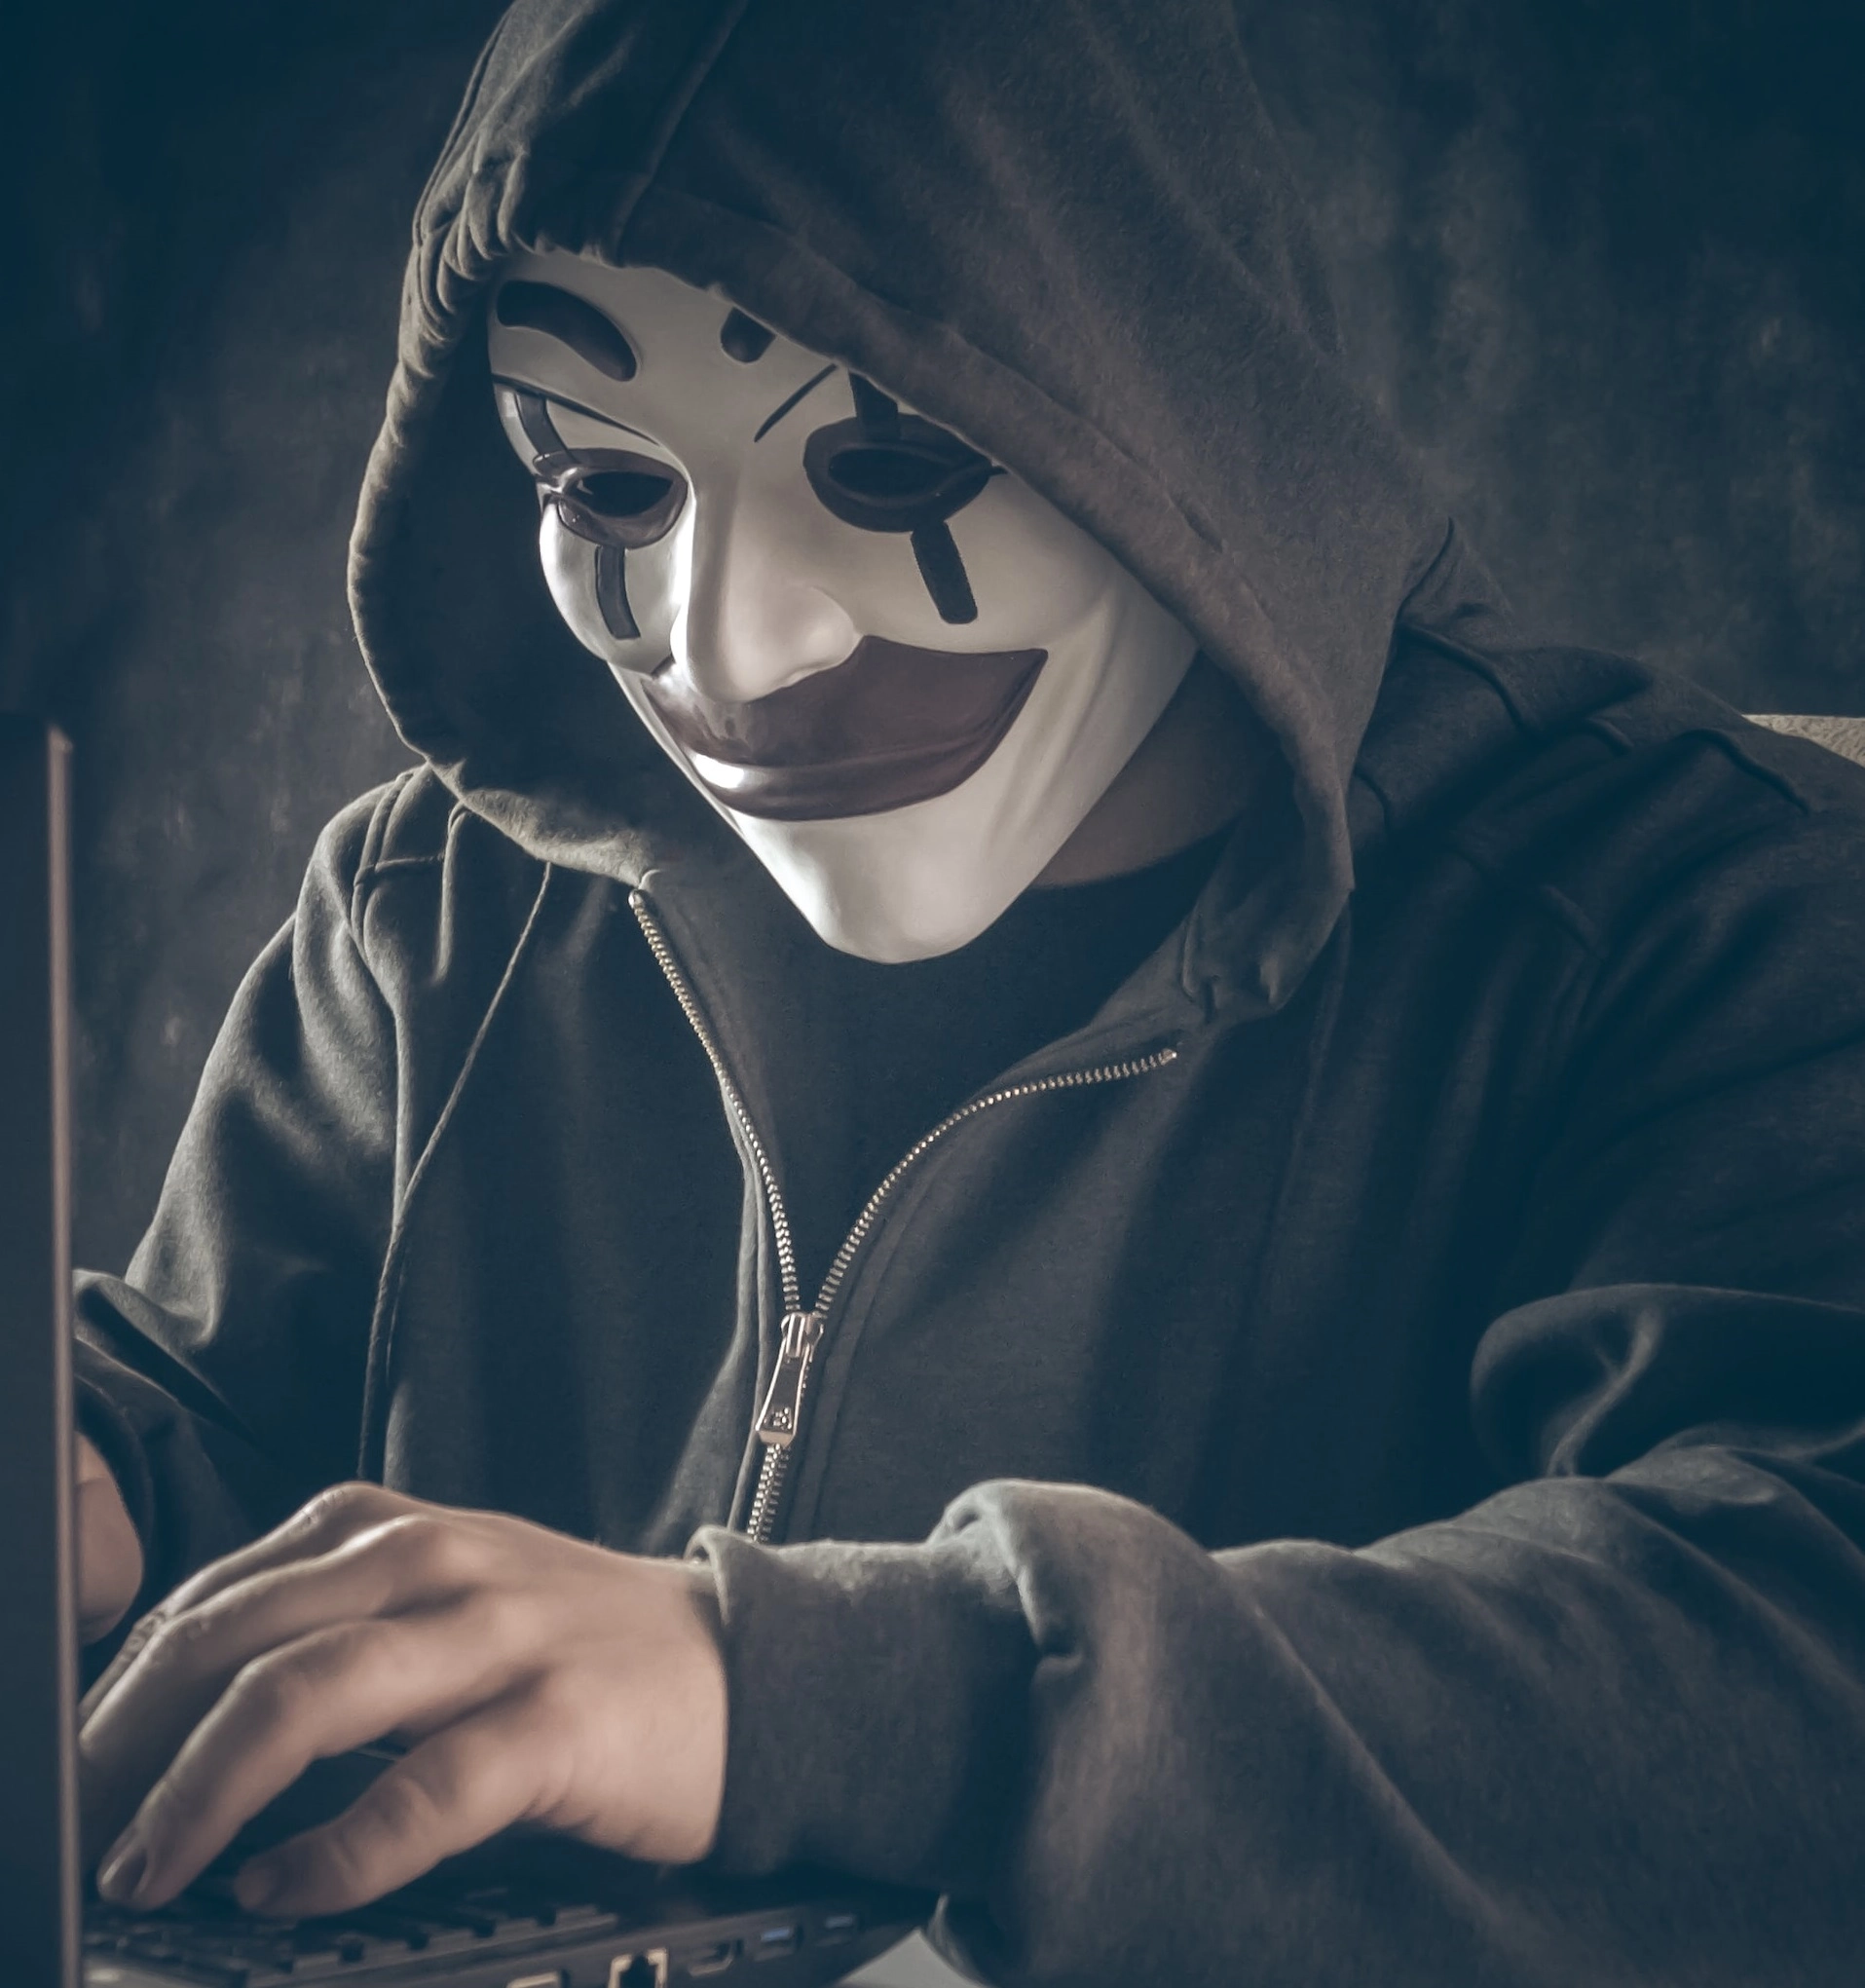 Online fraude - wie is het?